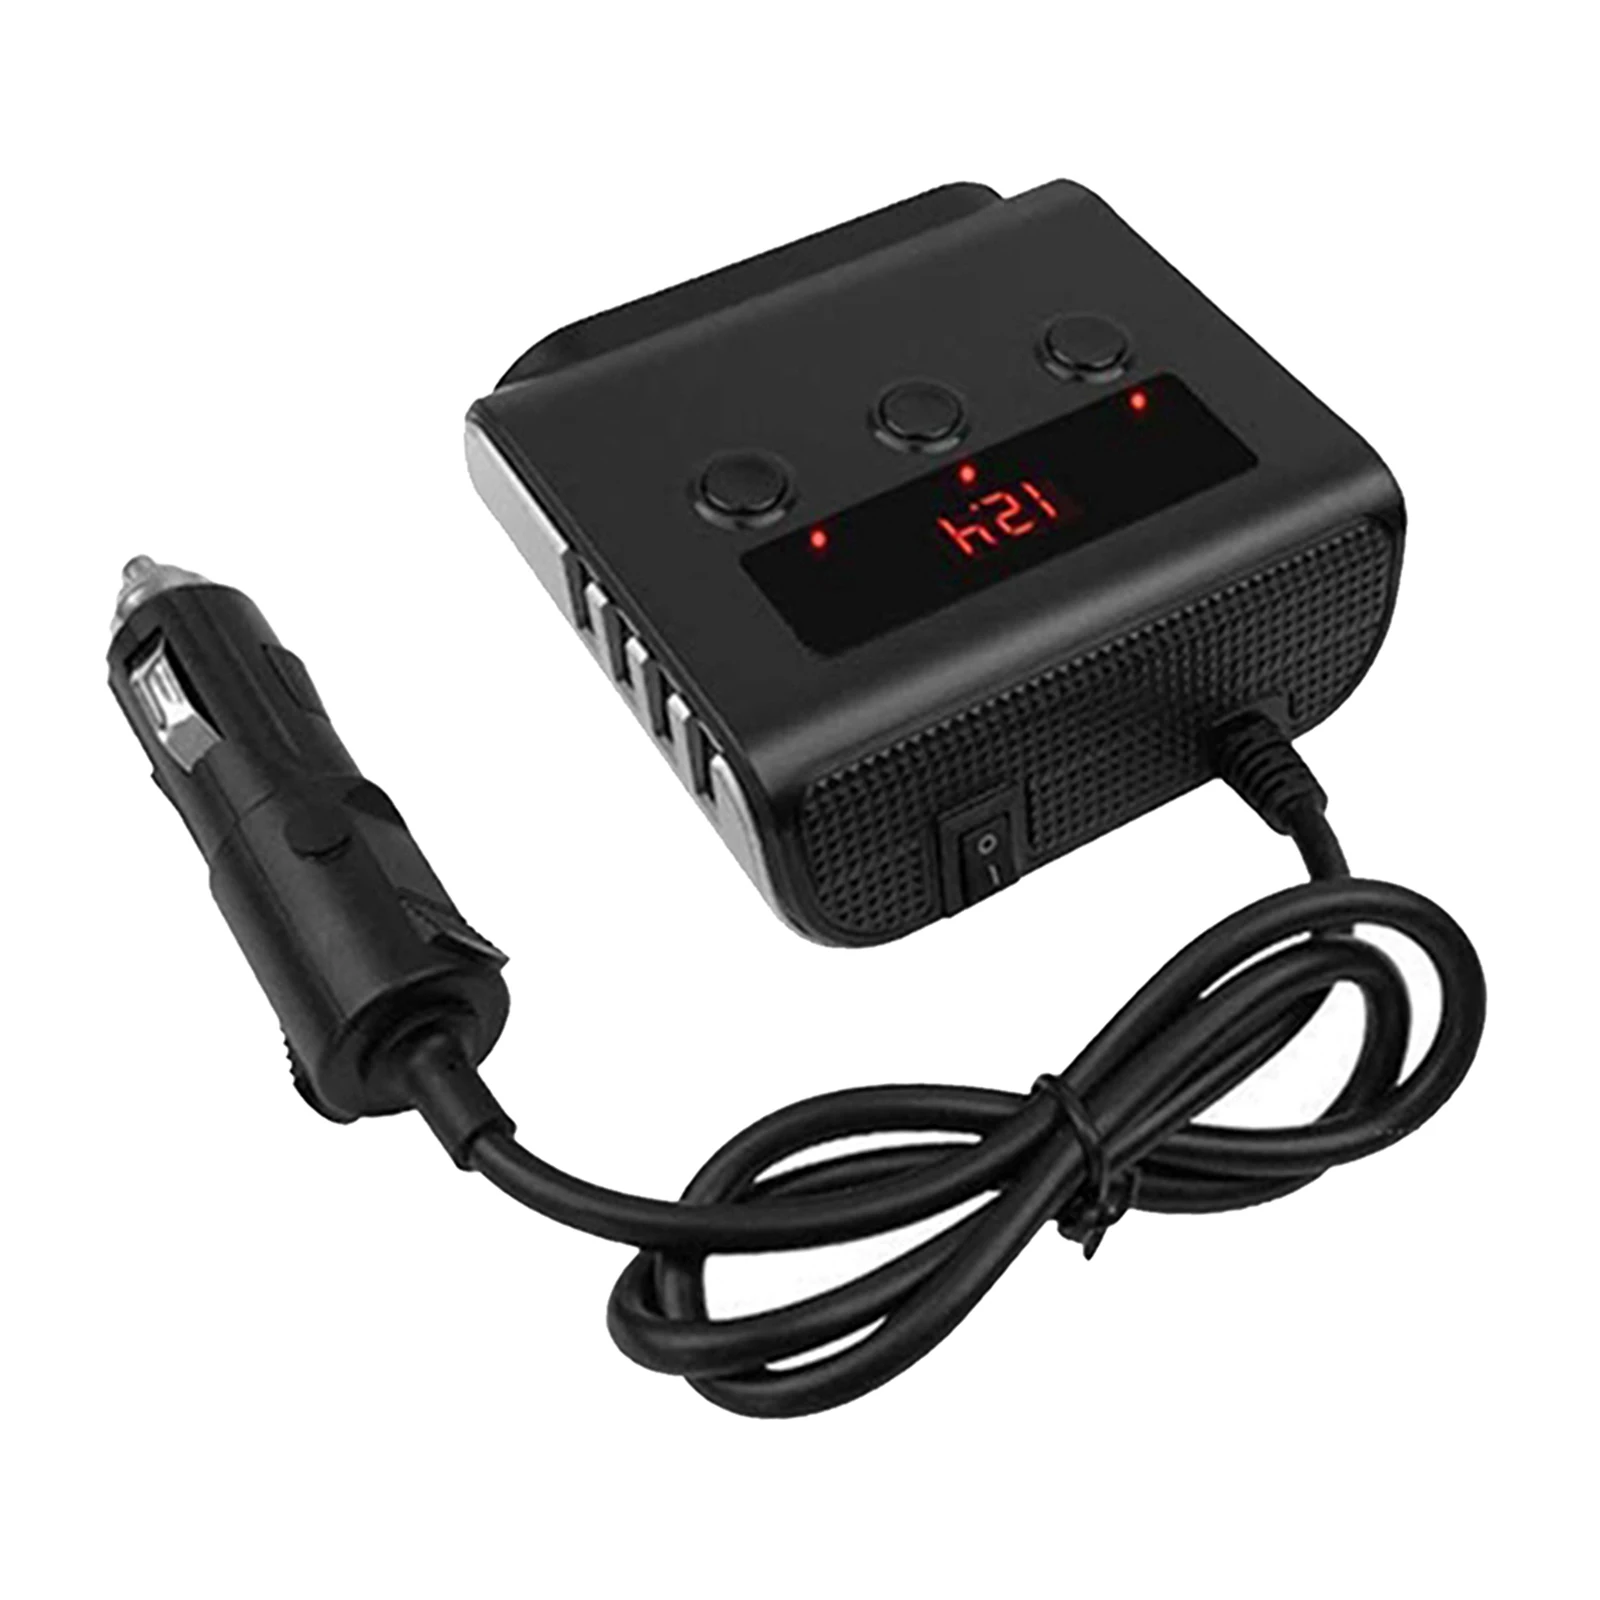 Car Automobile Cigarette Lighter Adapter 12V/24V Power Adaptor LED Voltage Display for GPS Dashcam